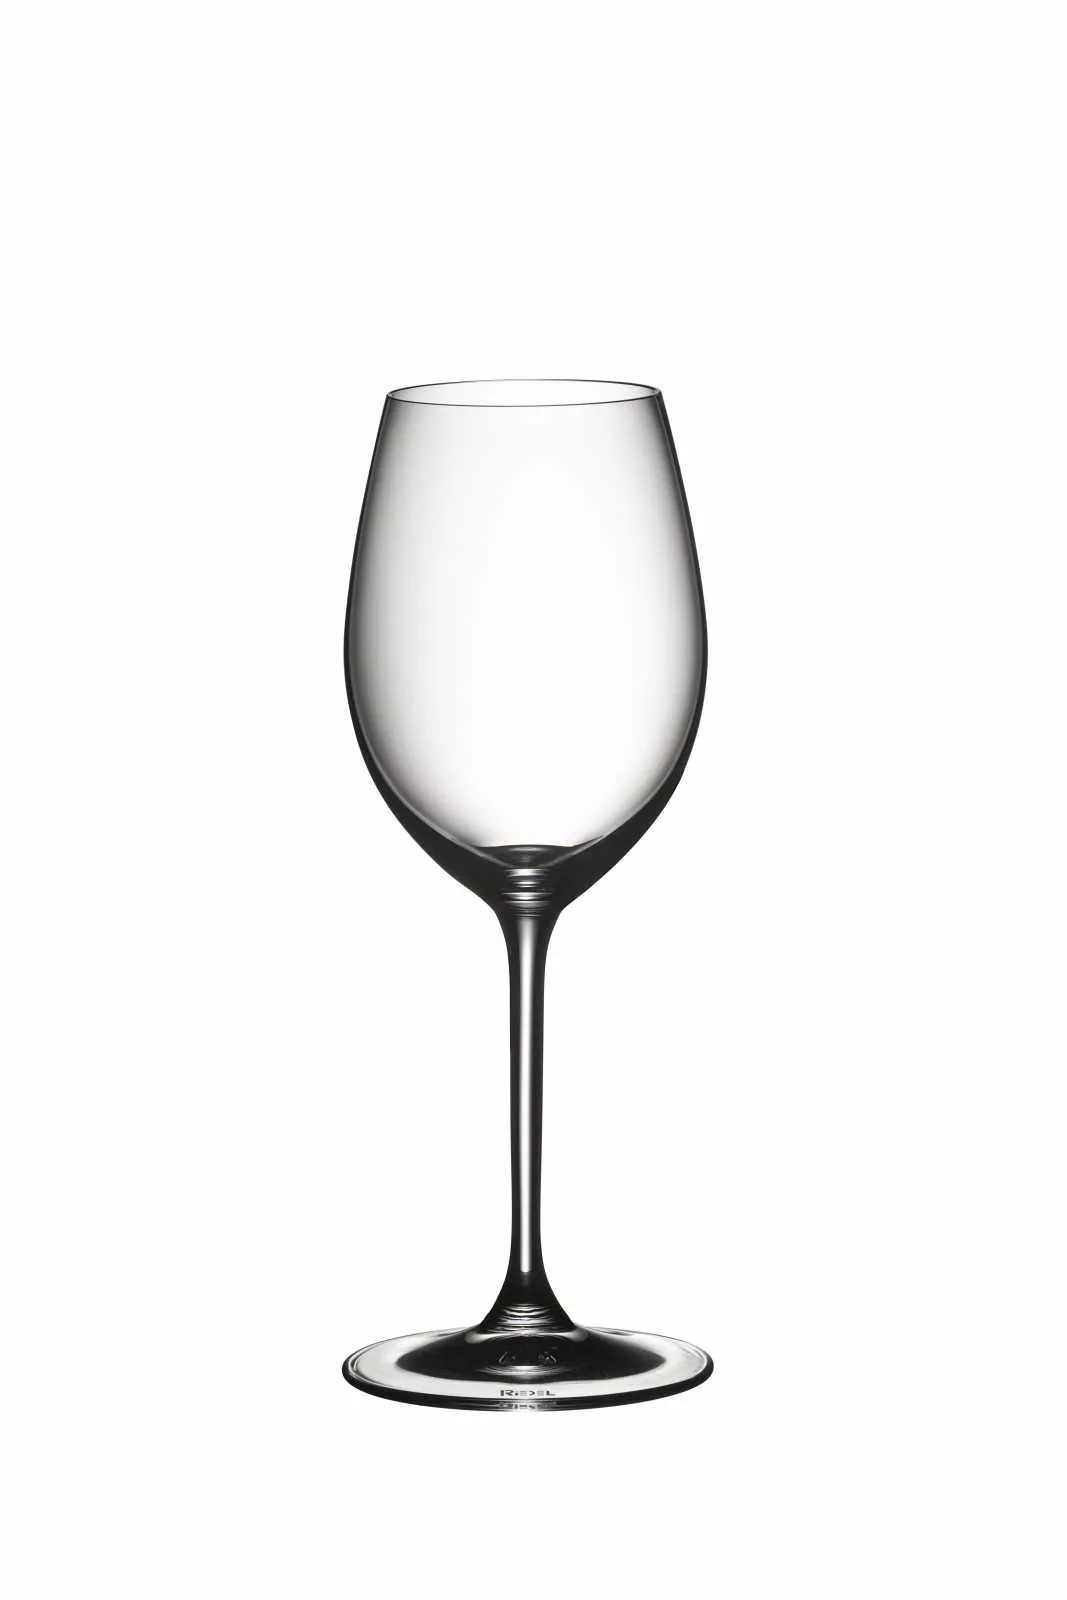 Набір келихів для білого вина Sauvignon blanc Riedel Vinum, об'єм 0,35 л, 2 шт. (6416/33) - Фото nav 2